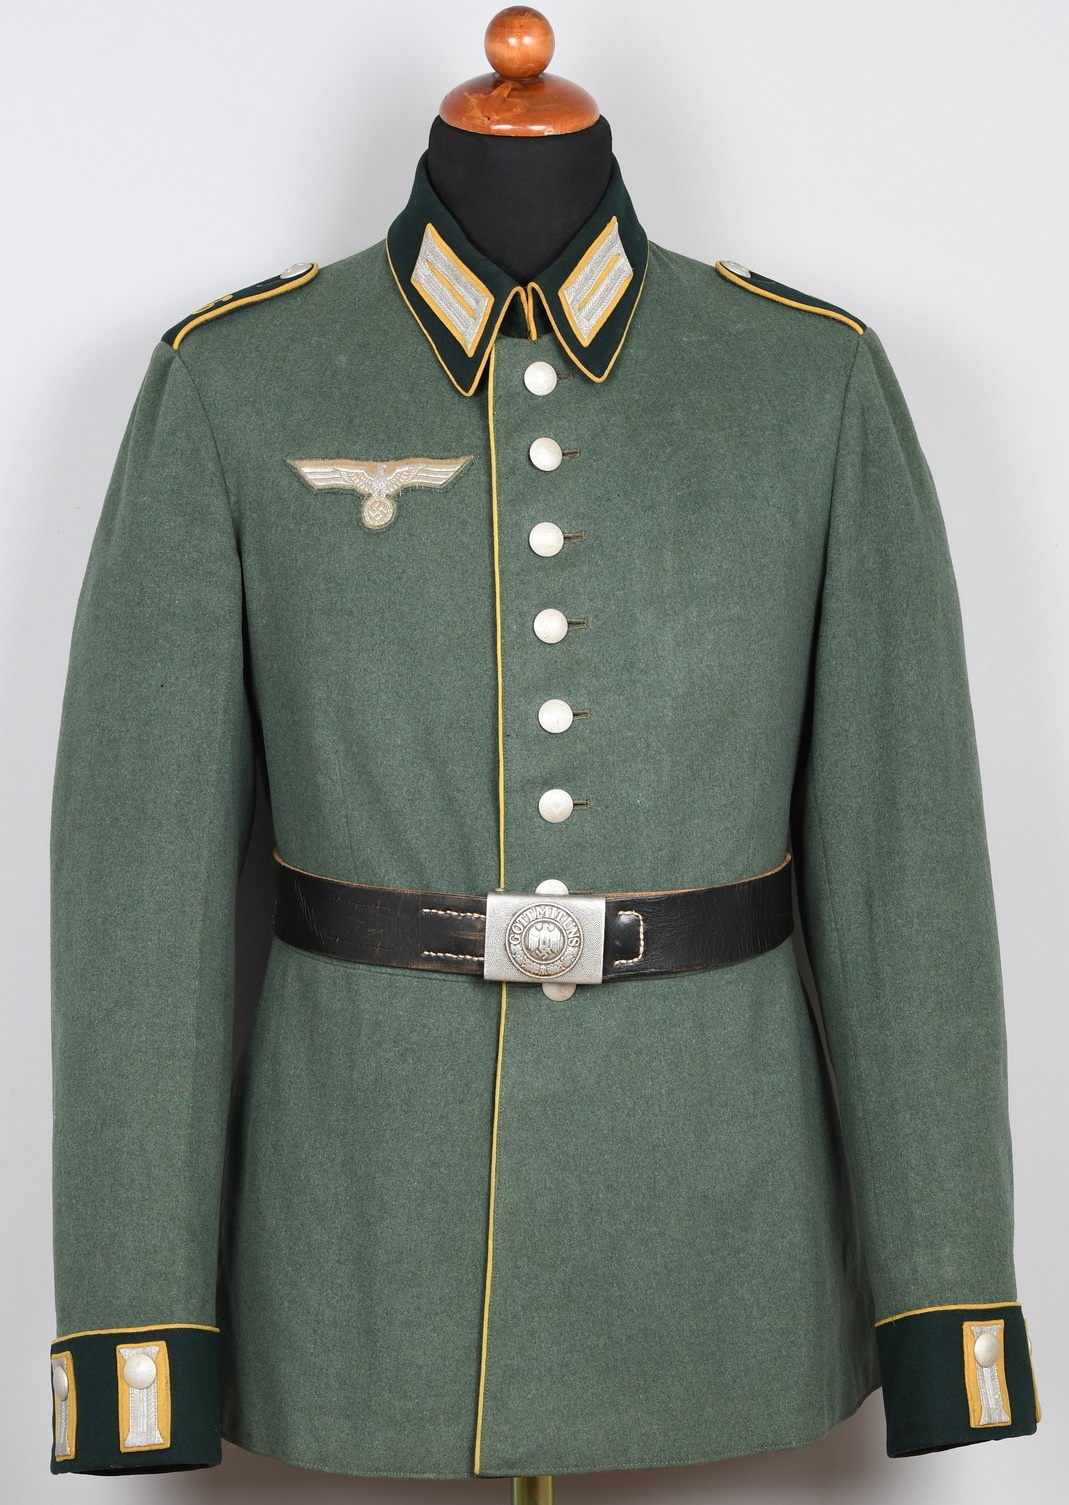 Dress Tunics, Military Antiques Stockholm